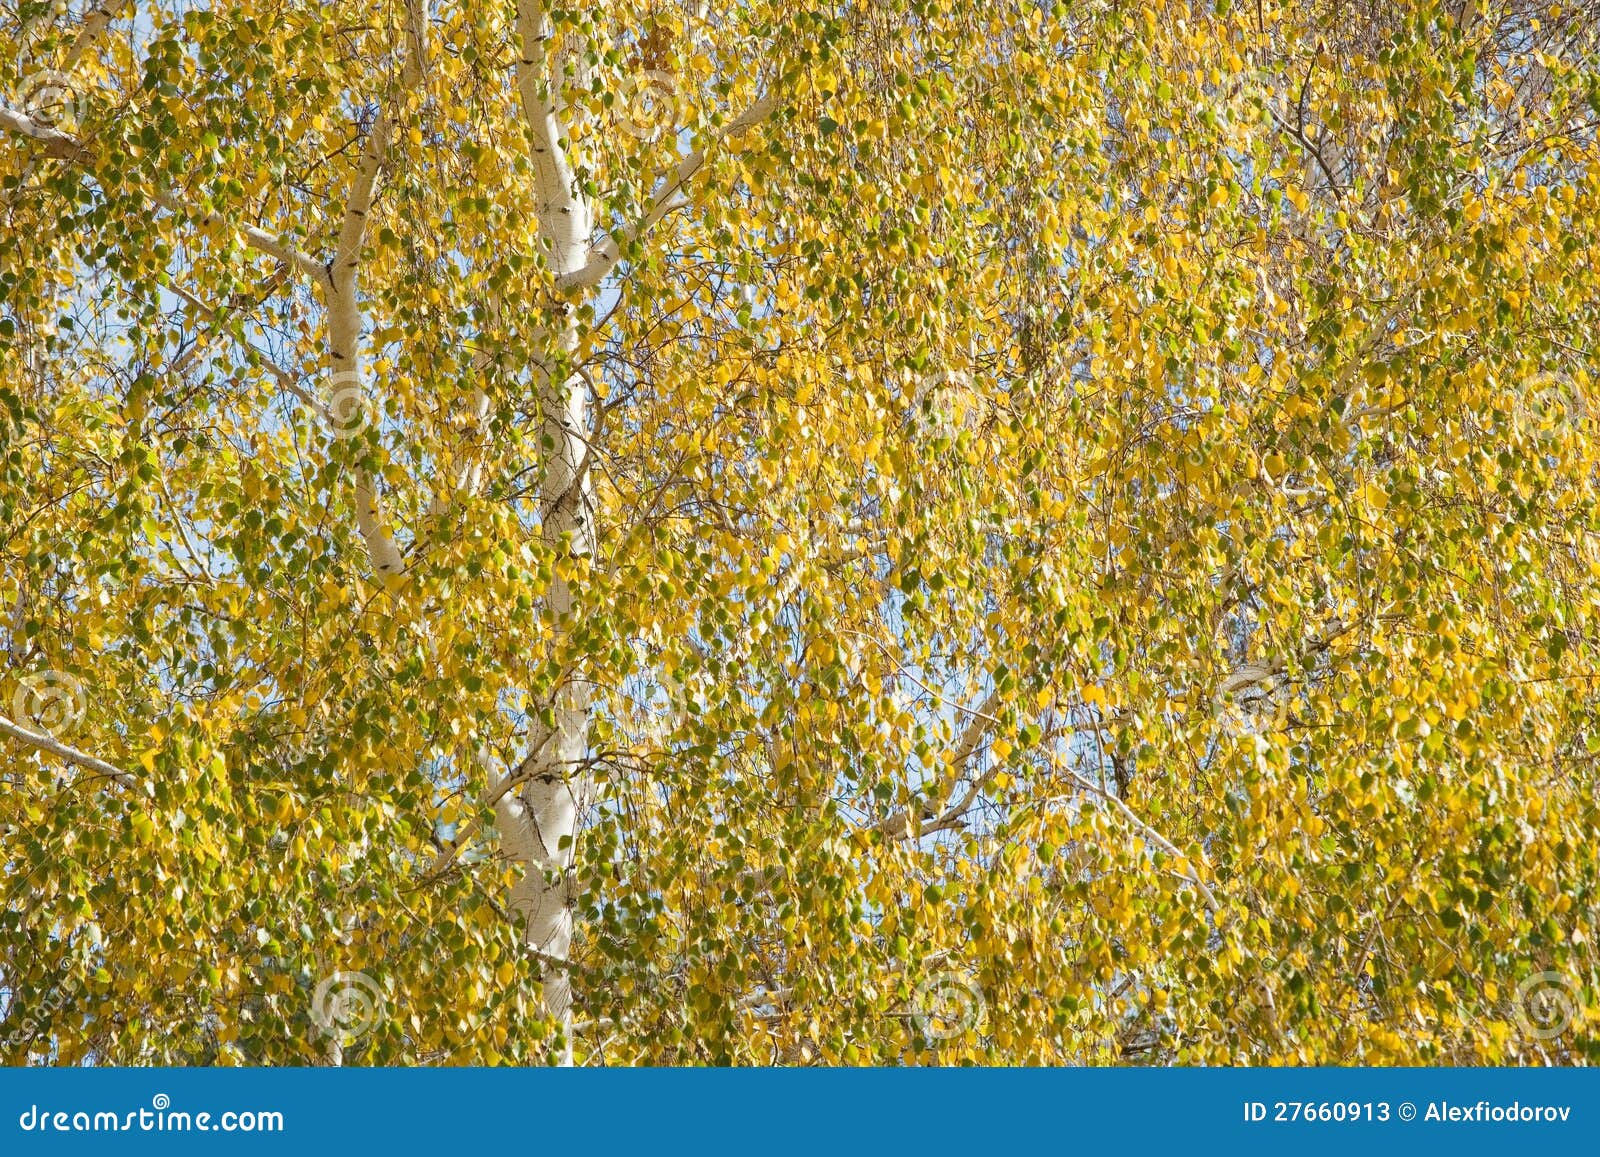 birch leafage background.